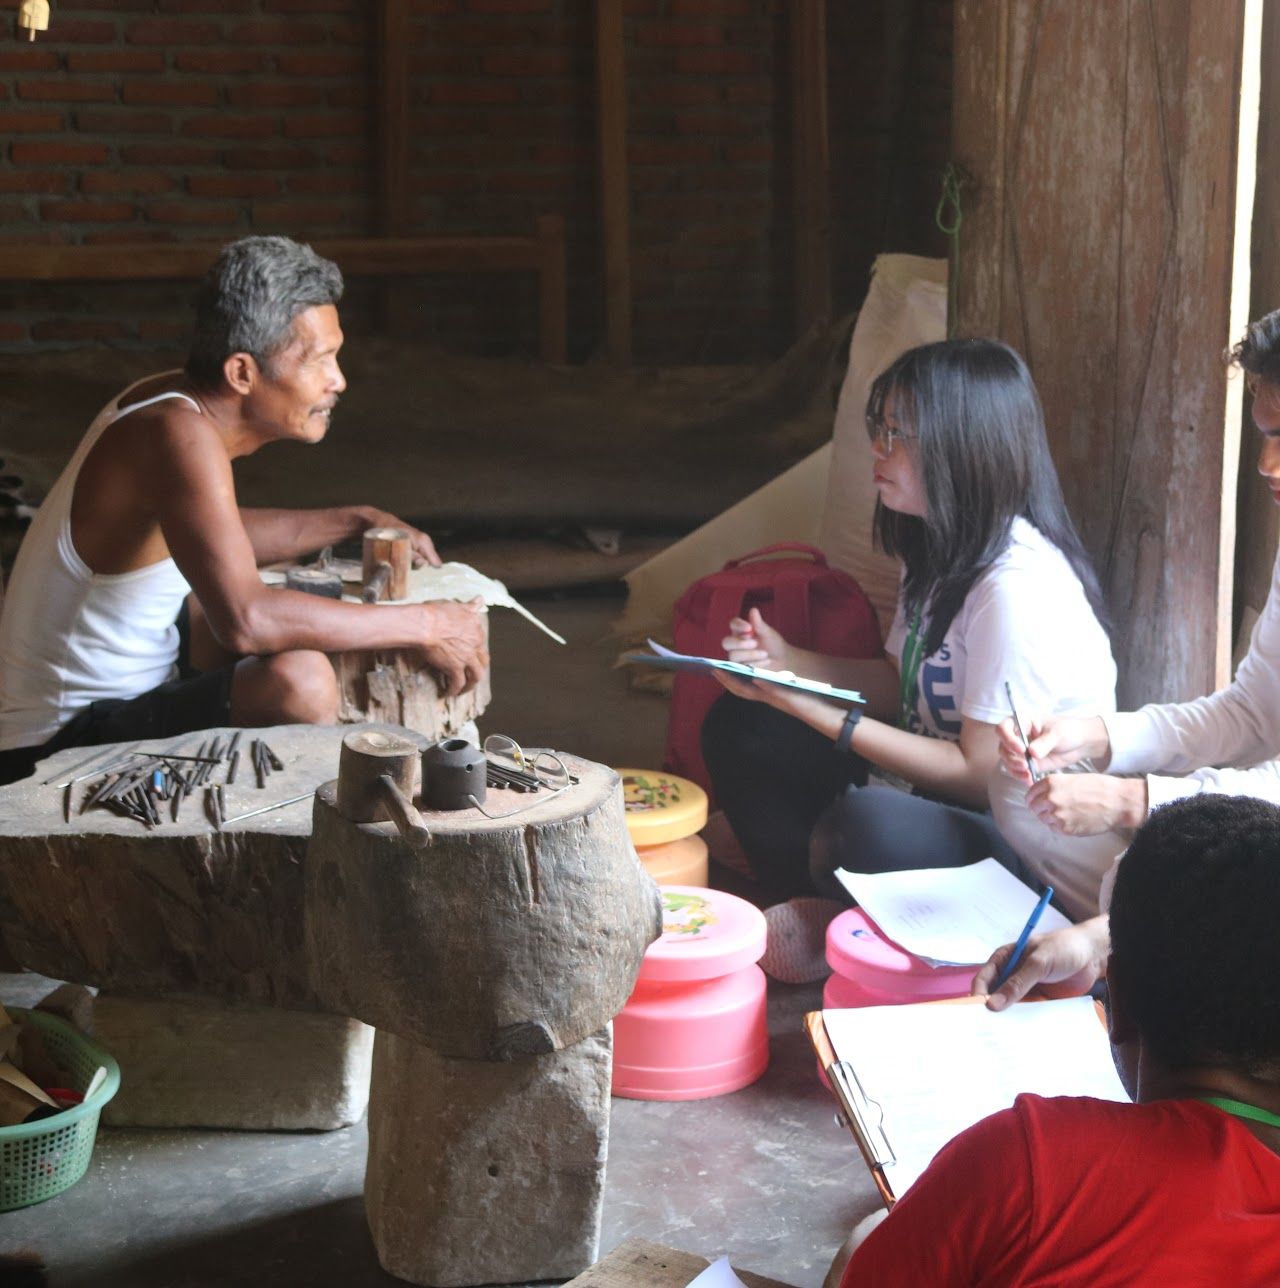 Desa Wisata Wukirsari, Bantul menawarkan edu-budaya di antaranya bisa mengenal lebih dekat dalam pembuatan wayang kulit menggunakan alat-alat tradisional, dan lain-lain.